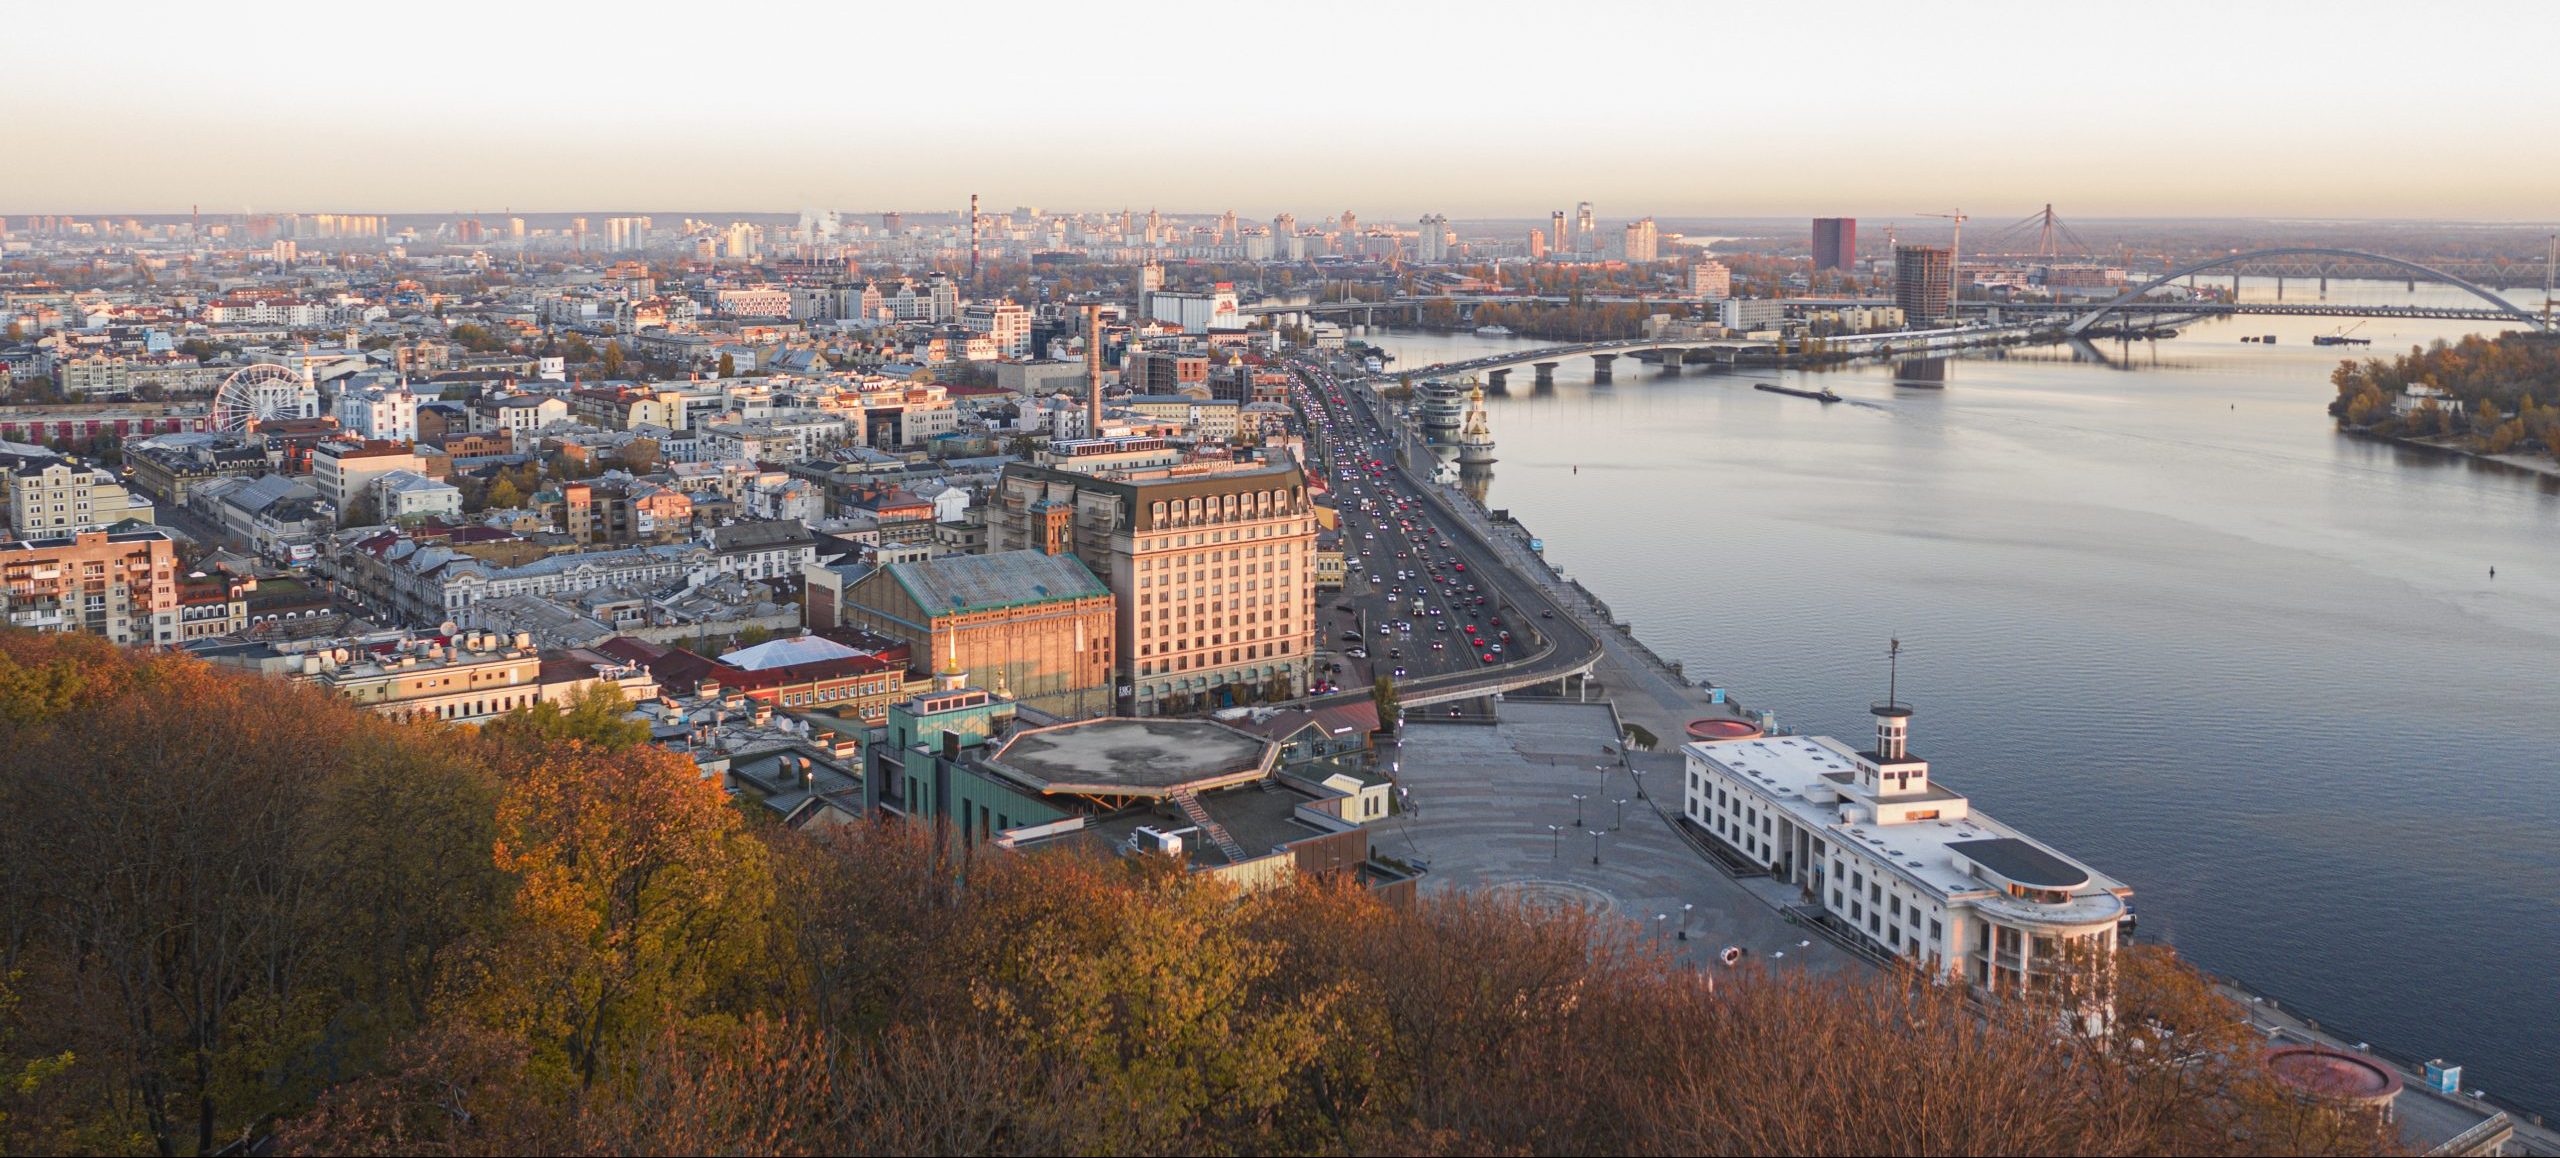 aerial_view_kyiv